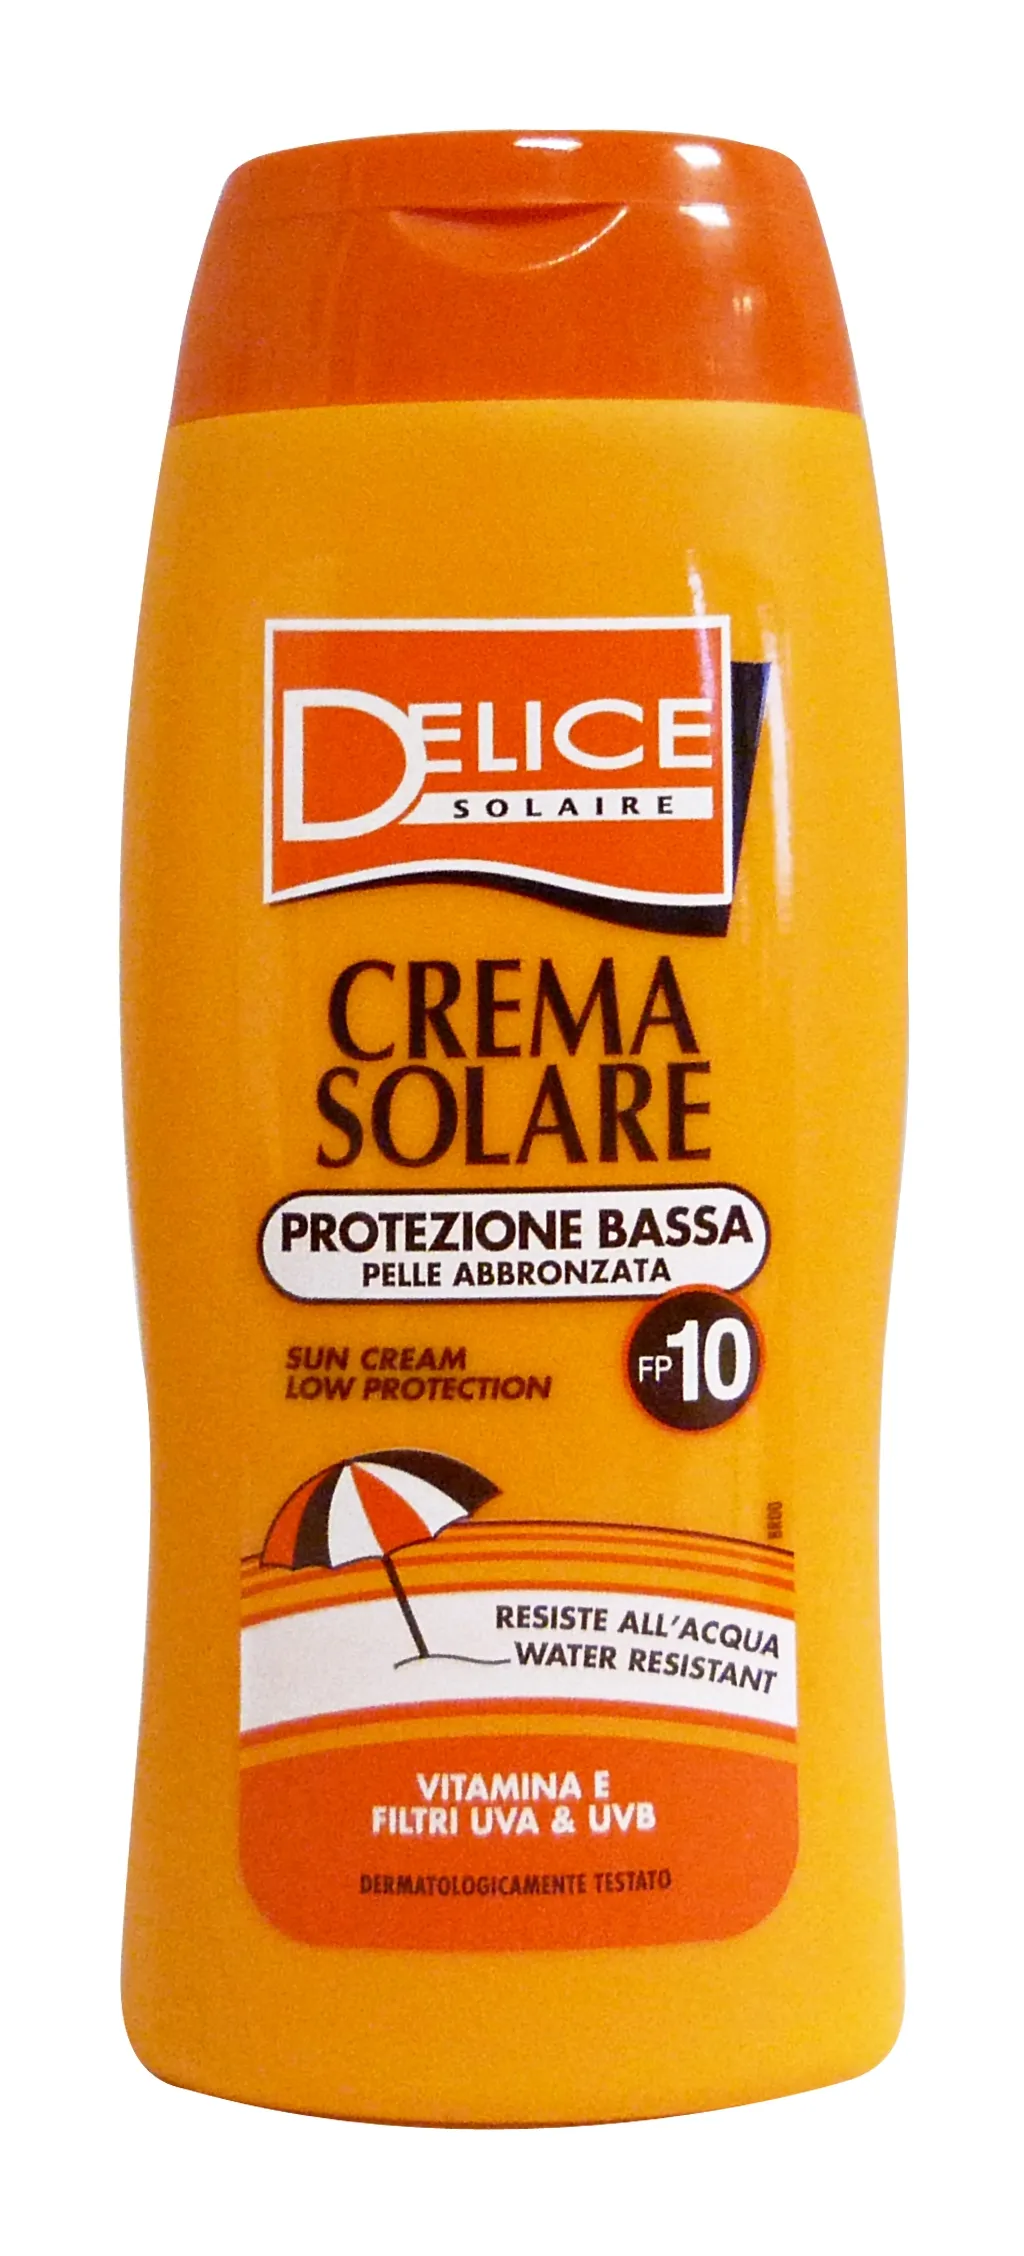 "DELICE Fp10 crema solare 250 ml. - Prodotti solari"